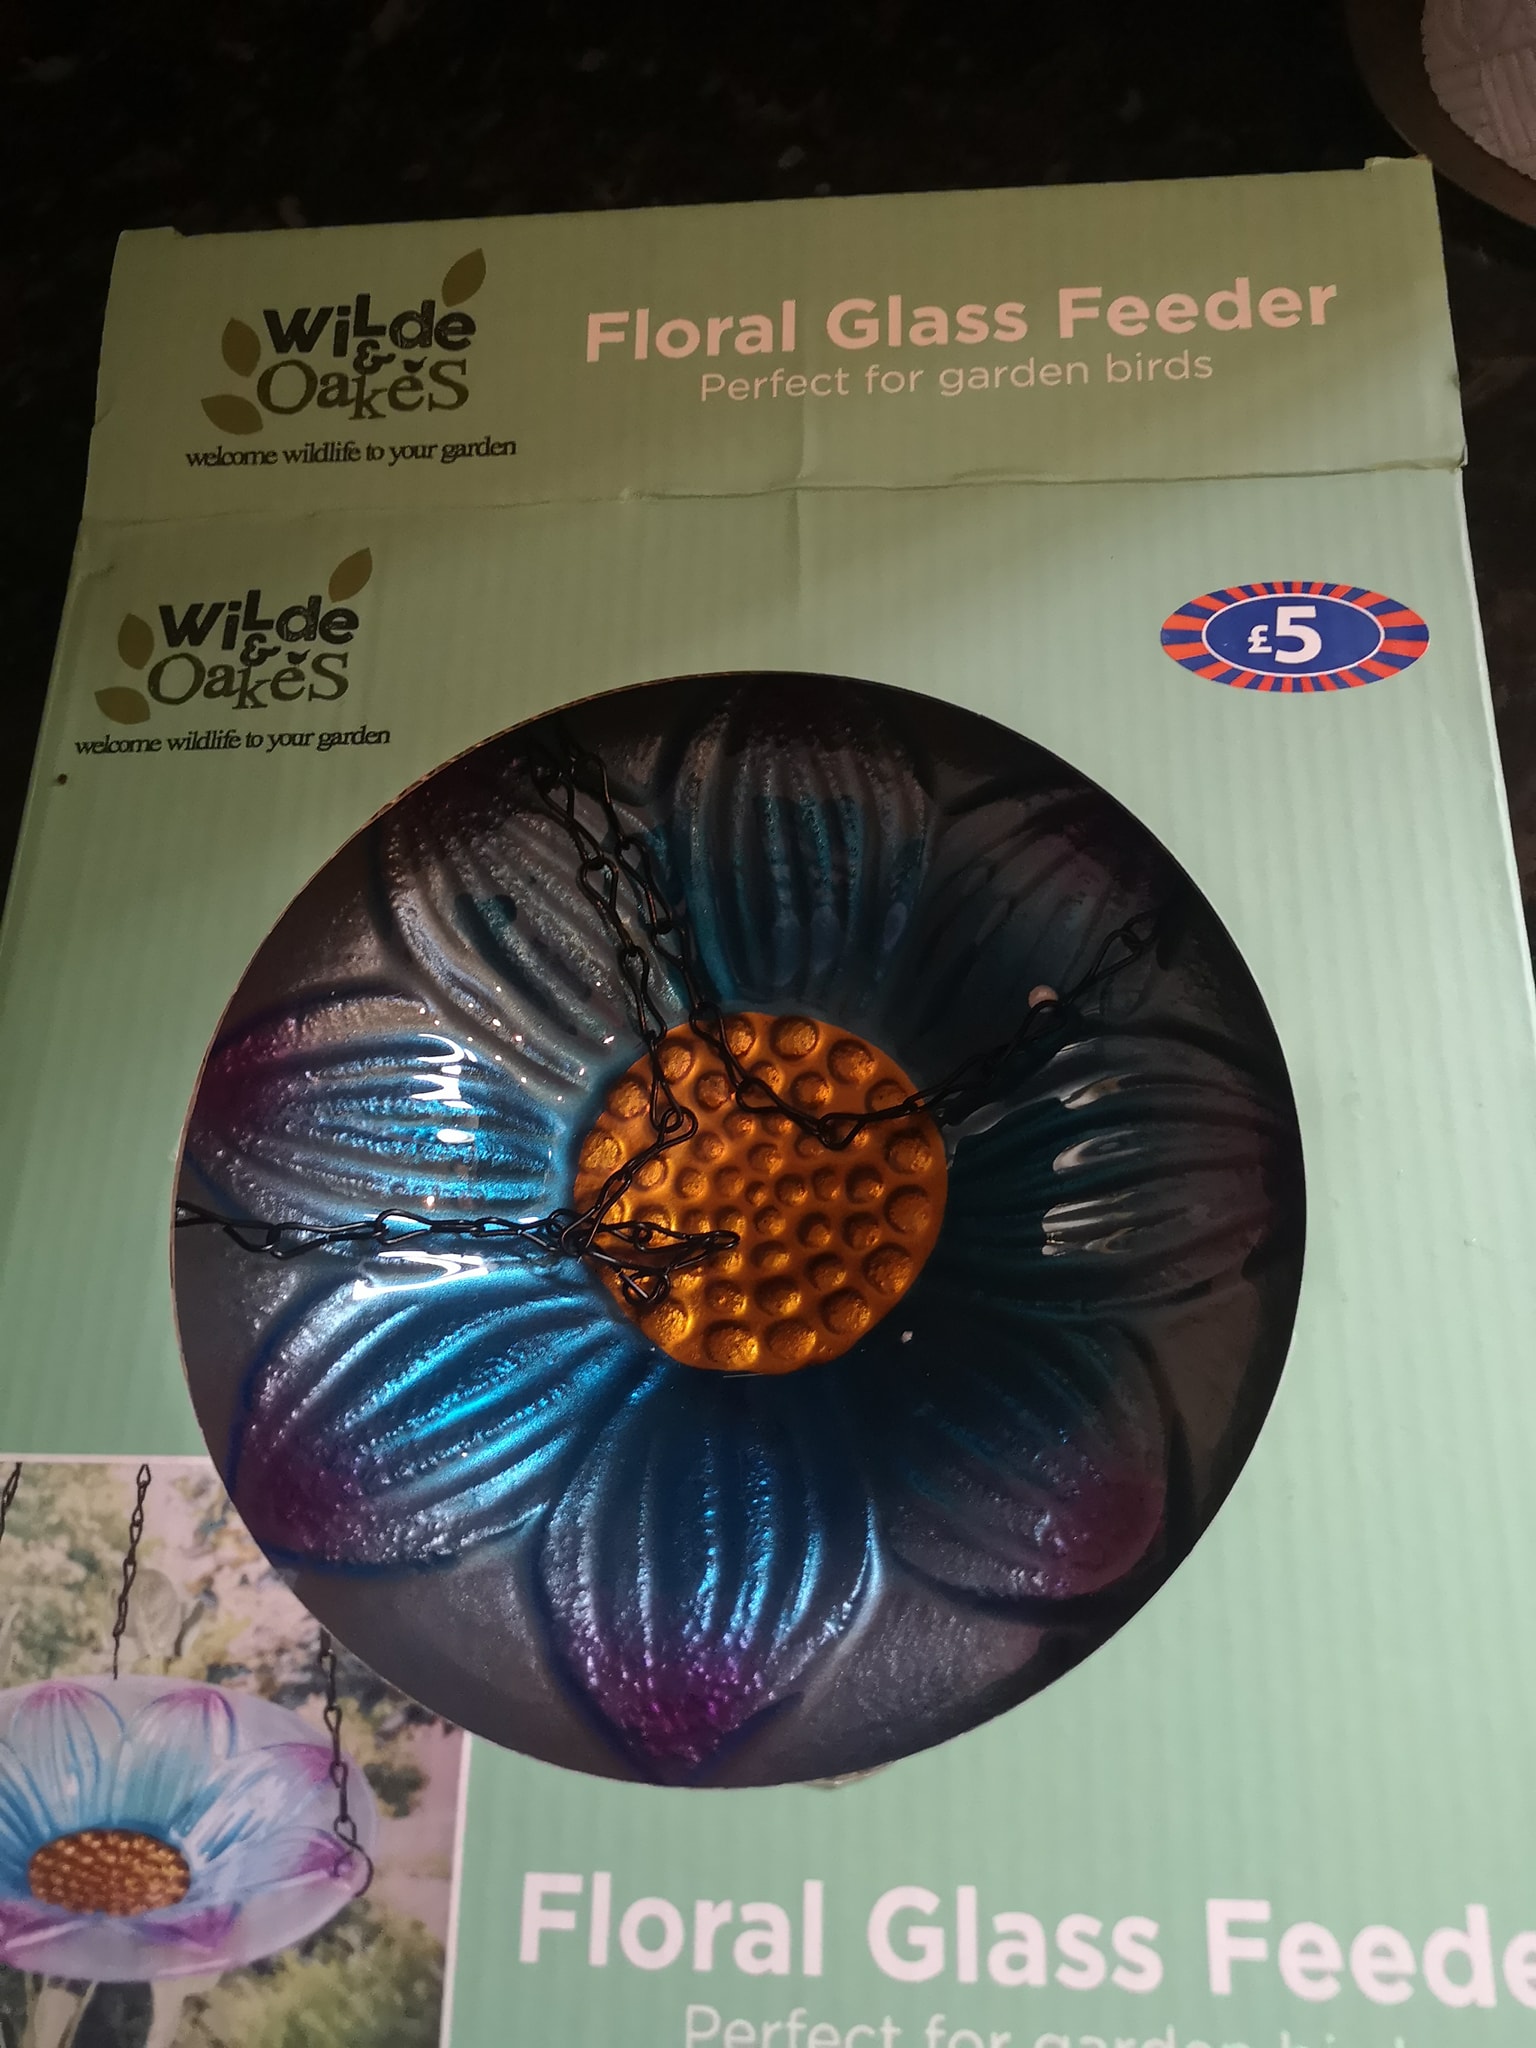 Der kluge Käufer ergatterte den Glas-Futterspender mit Blumenmuster für 2,50 £